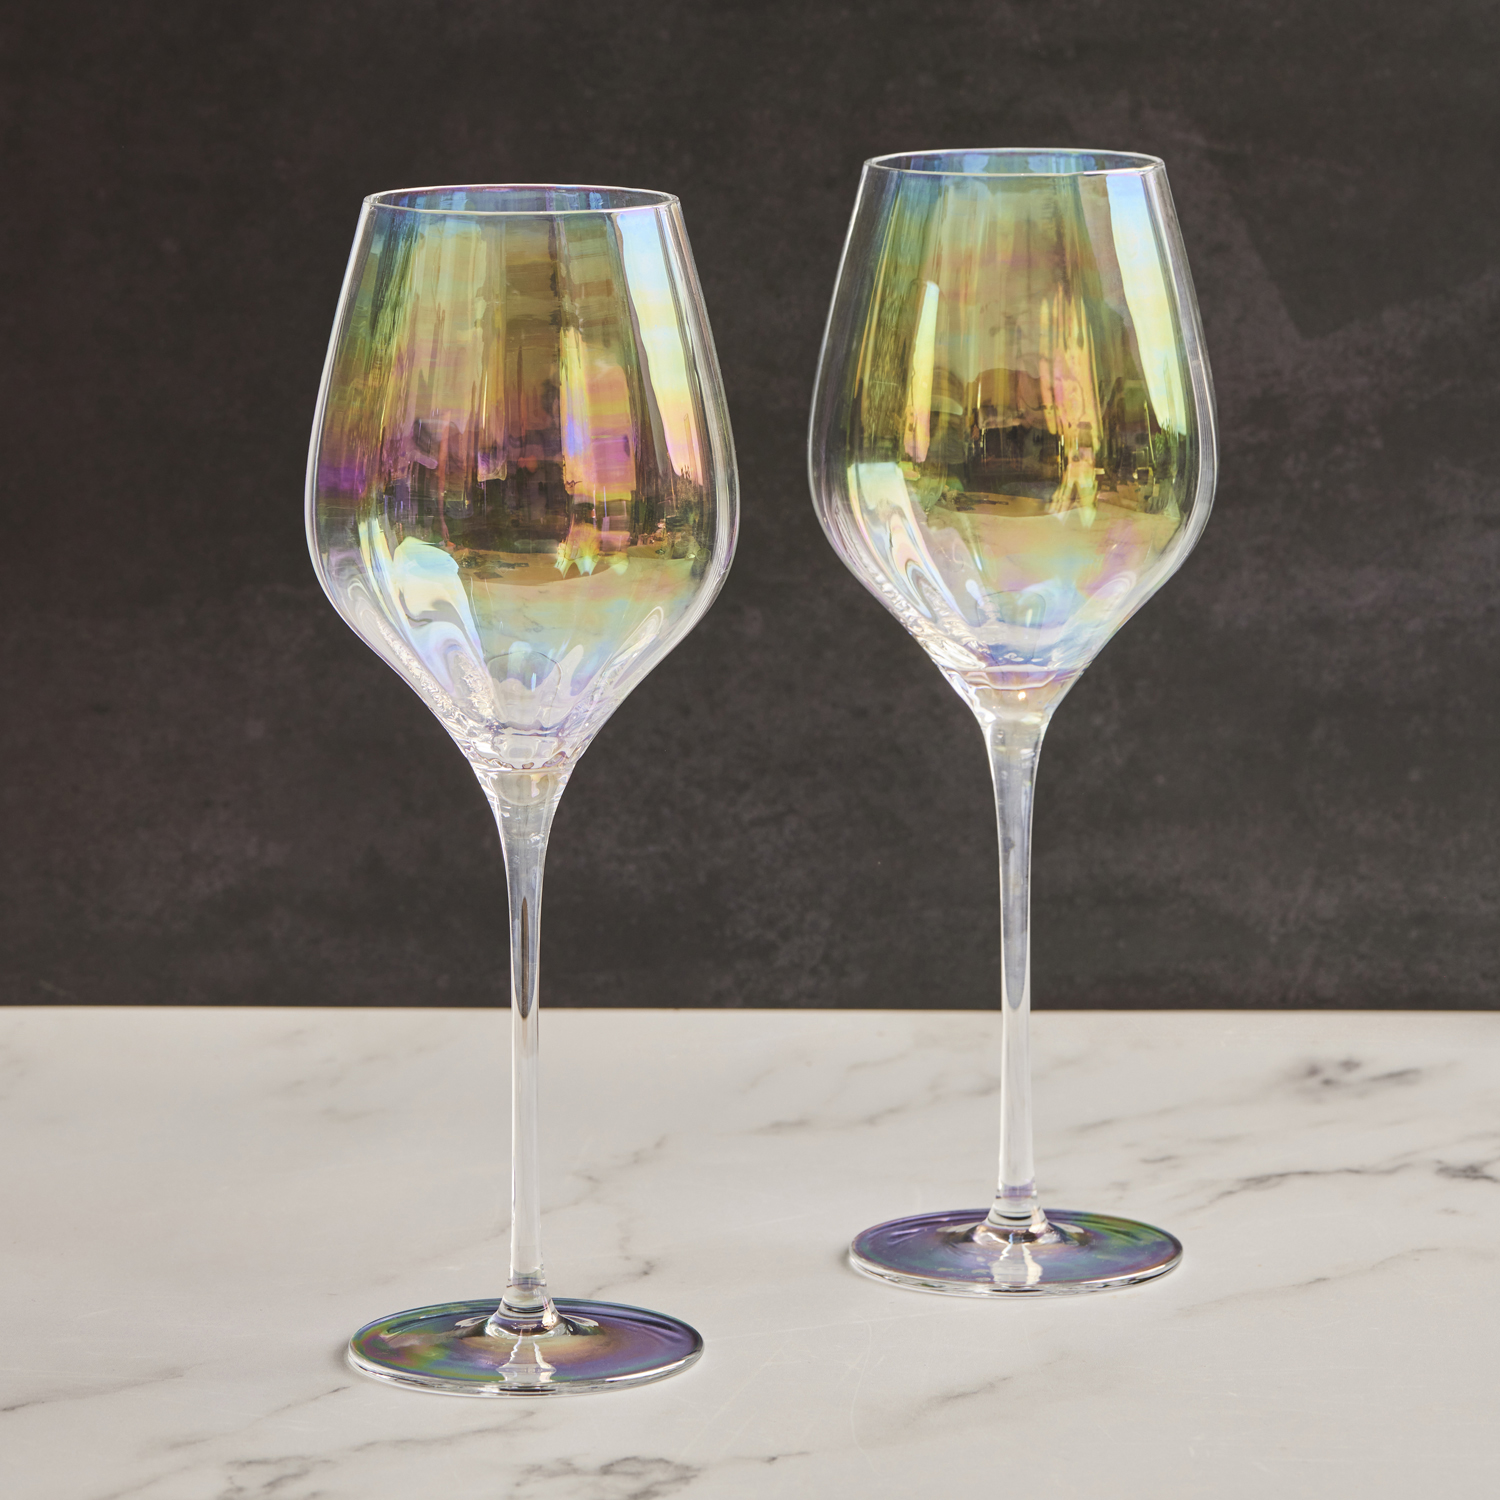 Visuel dePalazzo - Verres à vin, Set 2 - Anton Studio Designs Élevez votre table avec les superbes verres Palazzo. Leur élégance réside dans leurs longues tiges et leur profil élancé, apportant sophistication à chaque occasion. L'optique verticale sur les bols crée une finition perle élégante pour une touche de